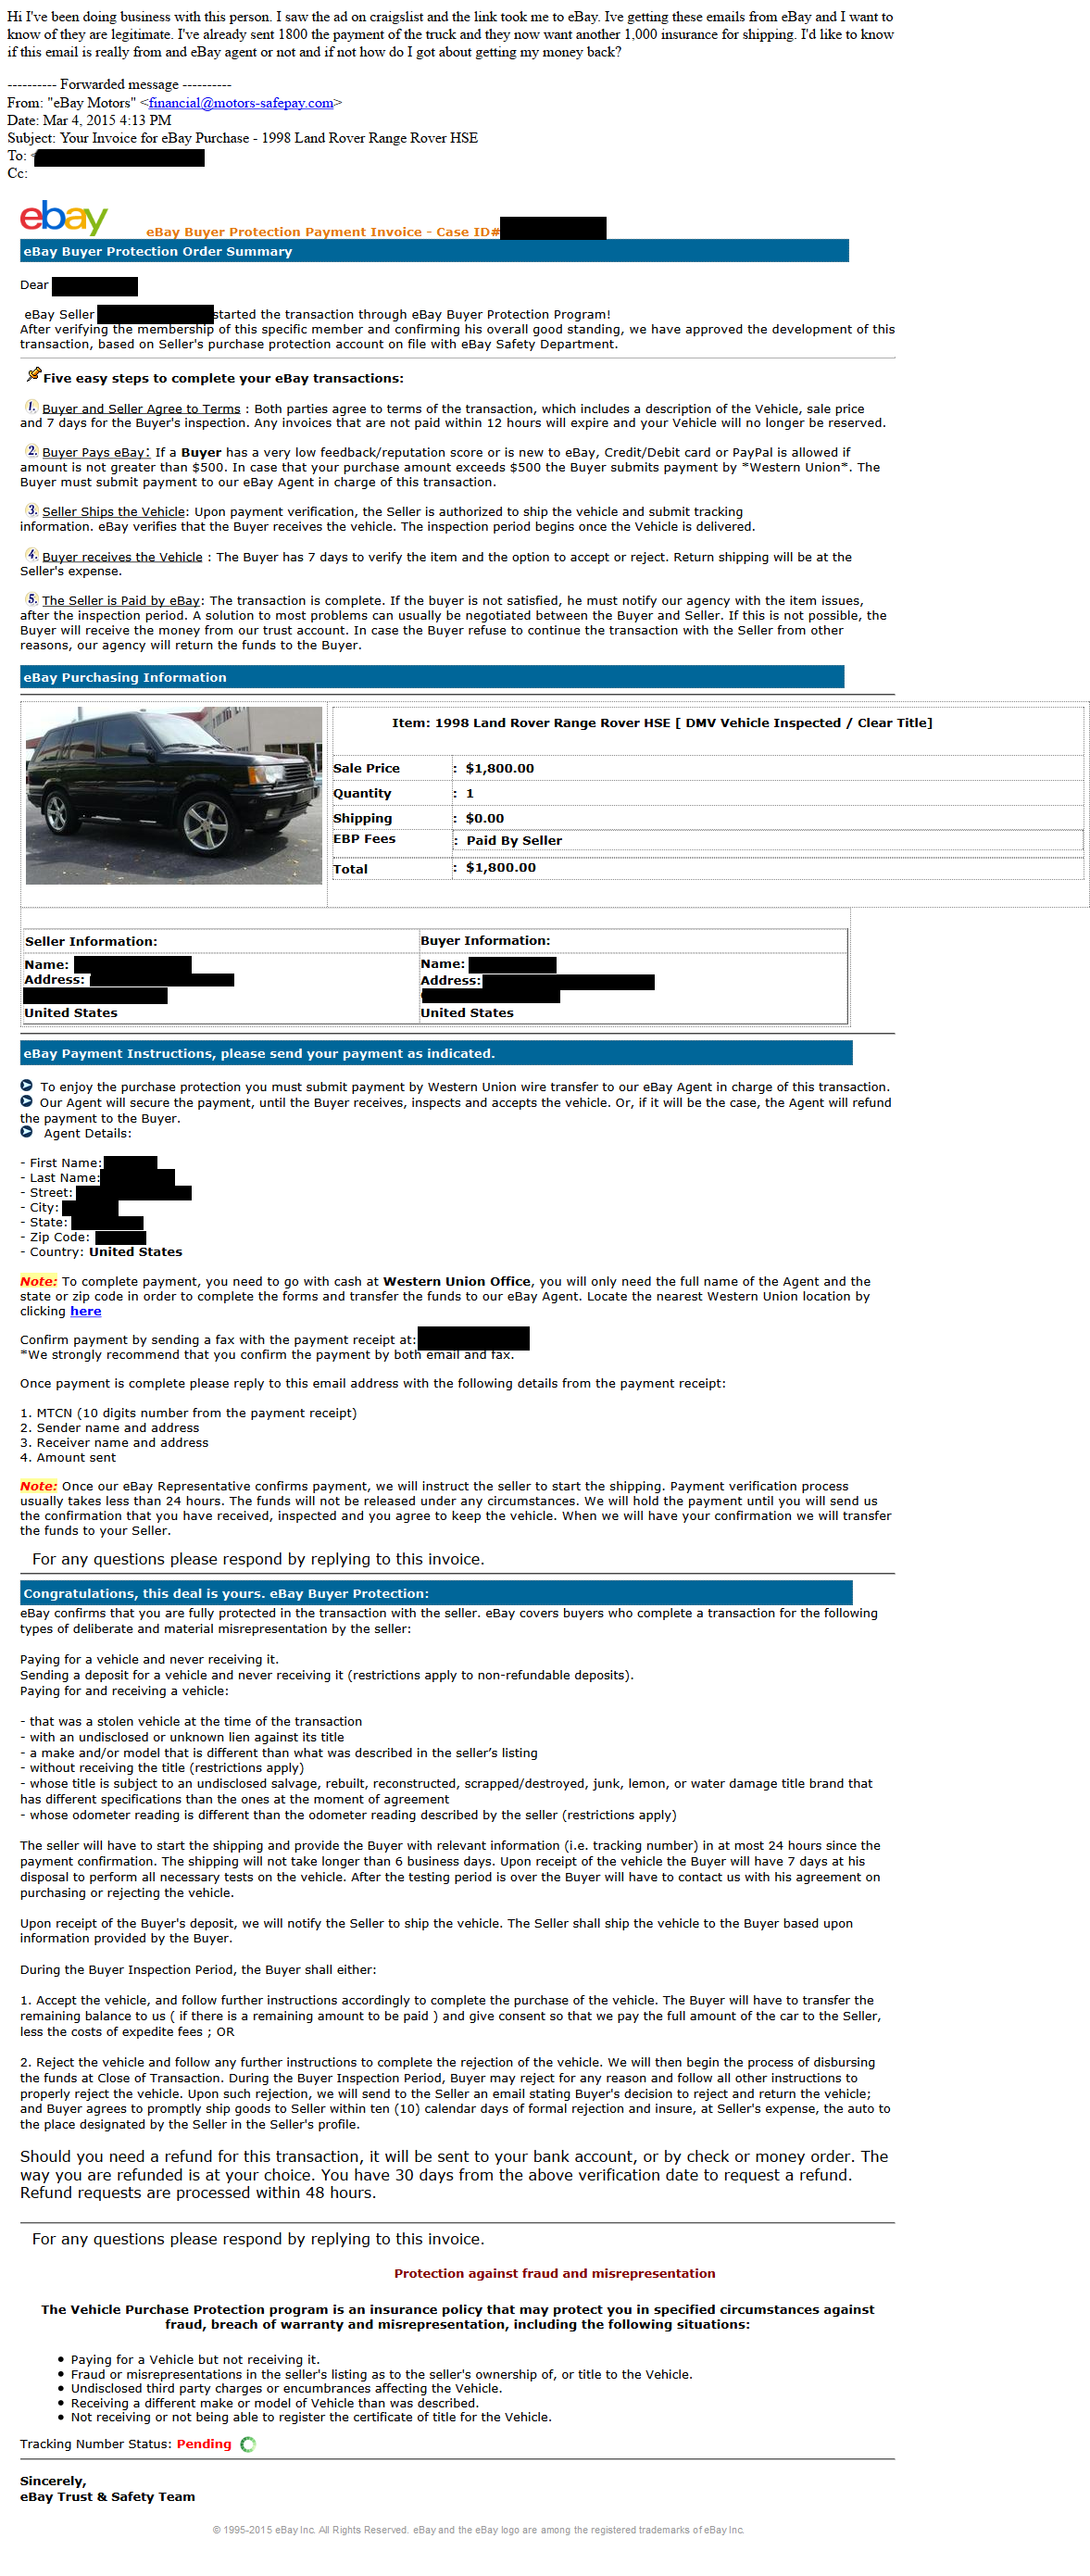 eBay motors scam - The eBay Community